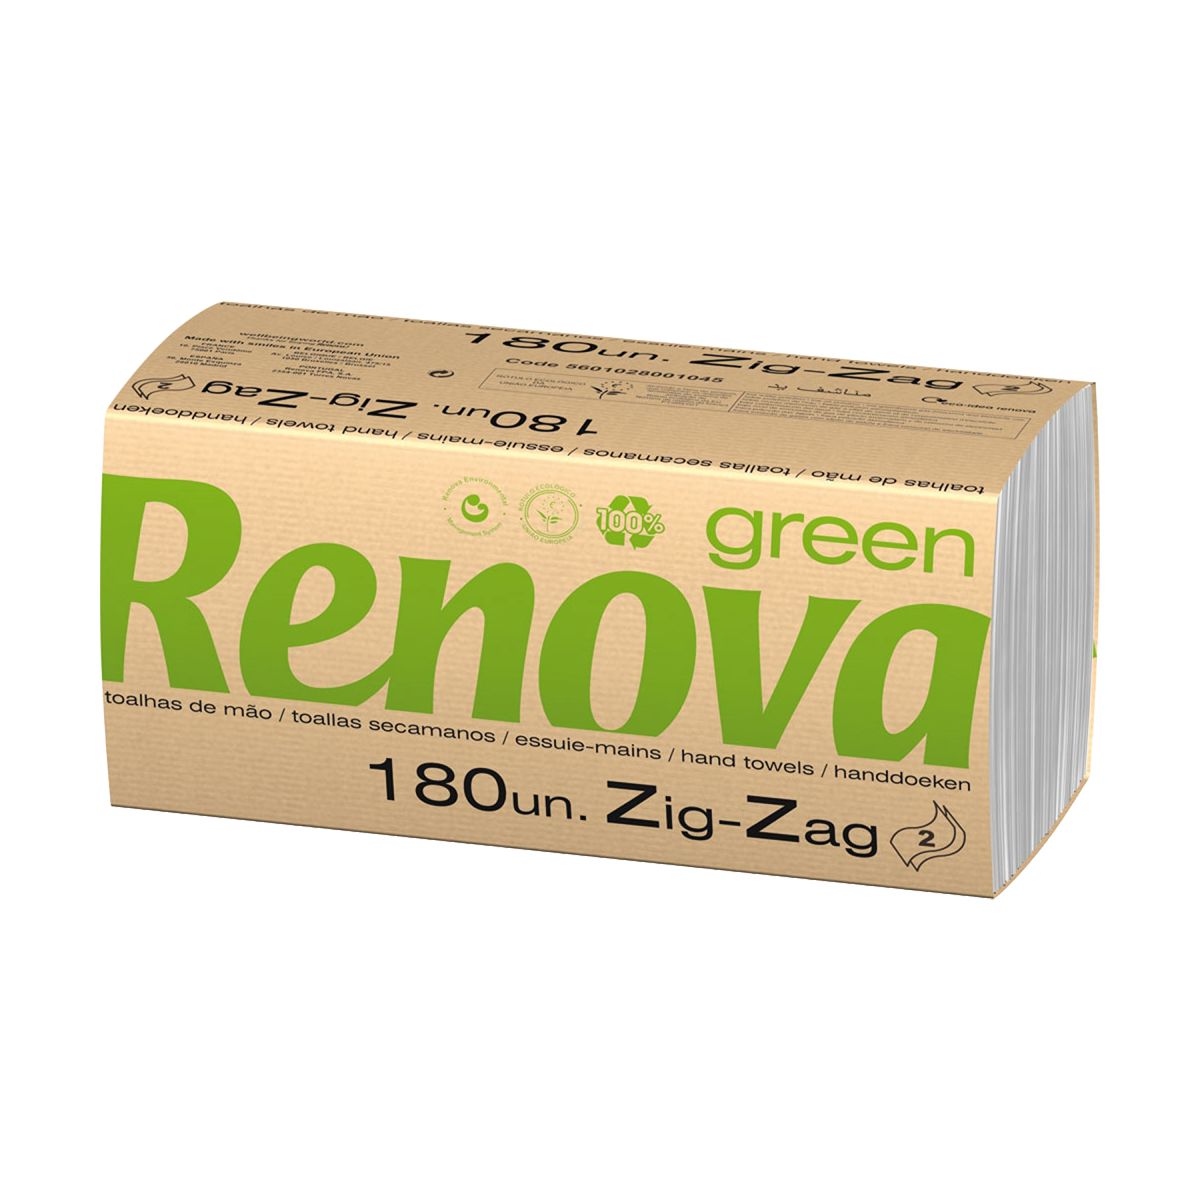 Toalhas de mão zig-zag branca 22x21,5 2 folhas Renova Green (pack 30x180 = 5400)